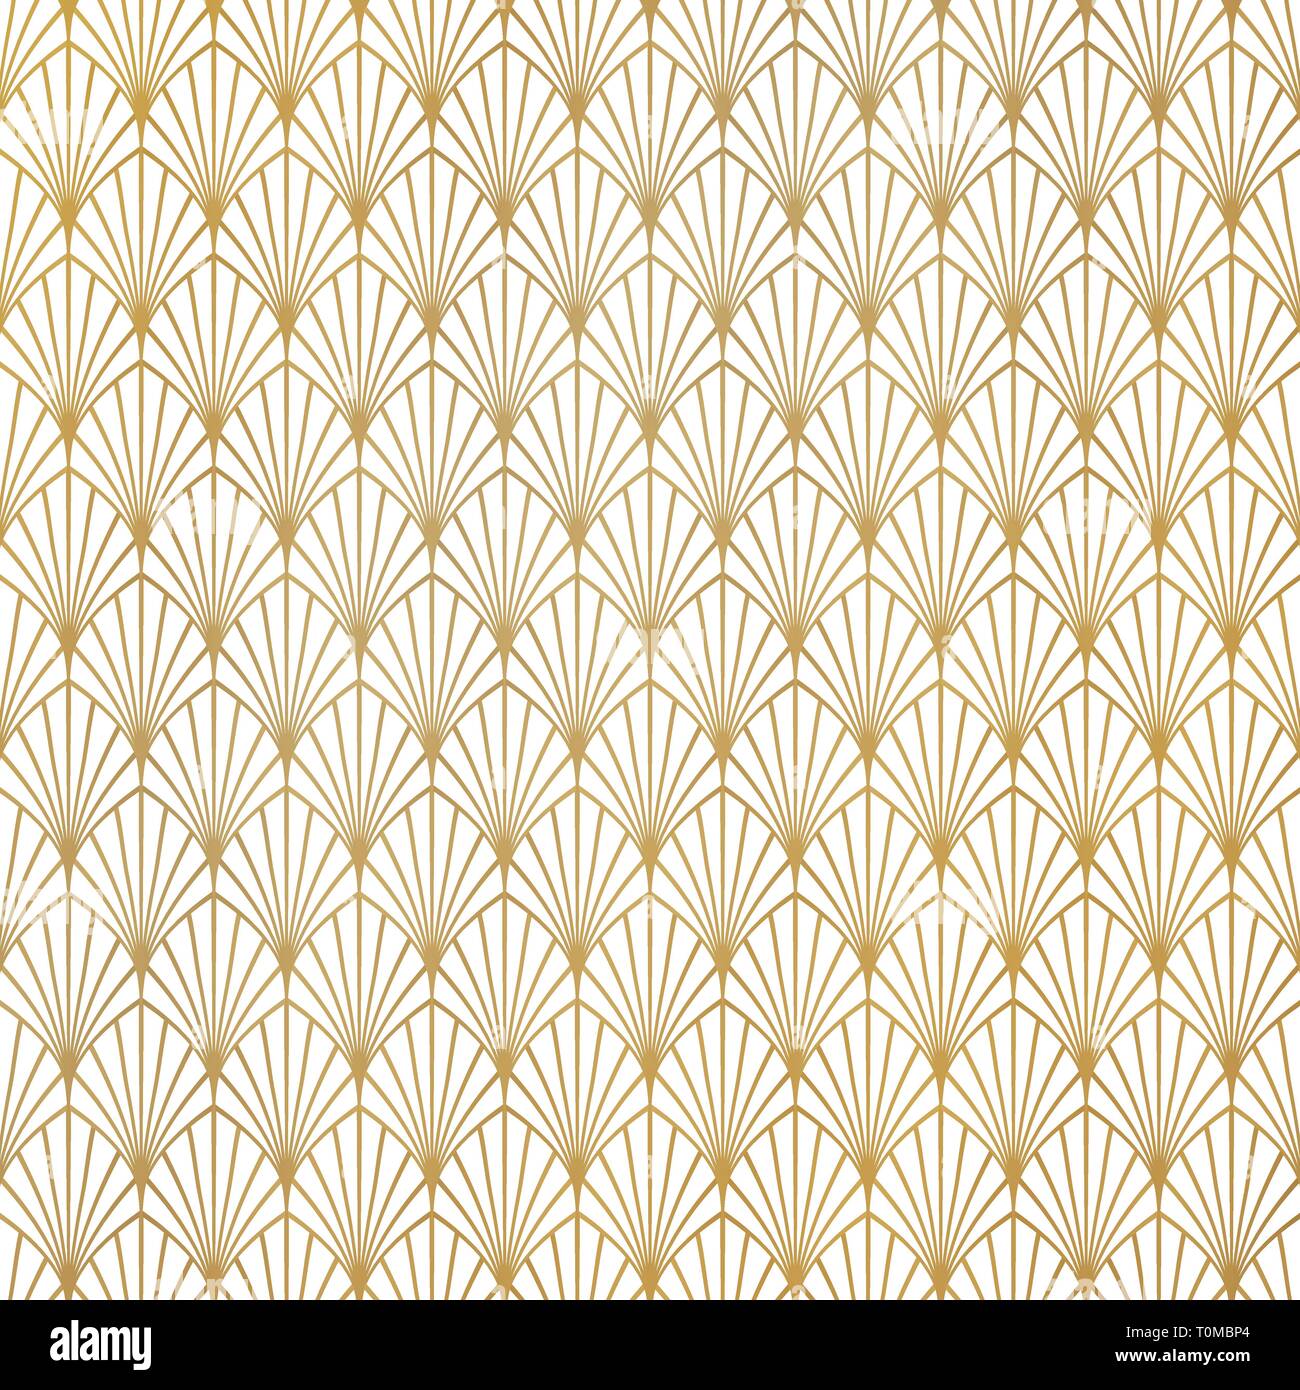 Abstrakte gold Art déco Muster Luxus design Hintergrund. Sie können für Premium Hintergrund, ad, Poster, Cover Design, Präsentation verwenden. Abbildung vect Stock Vektor